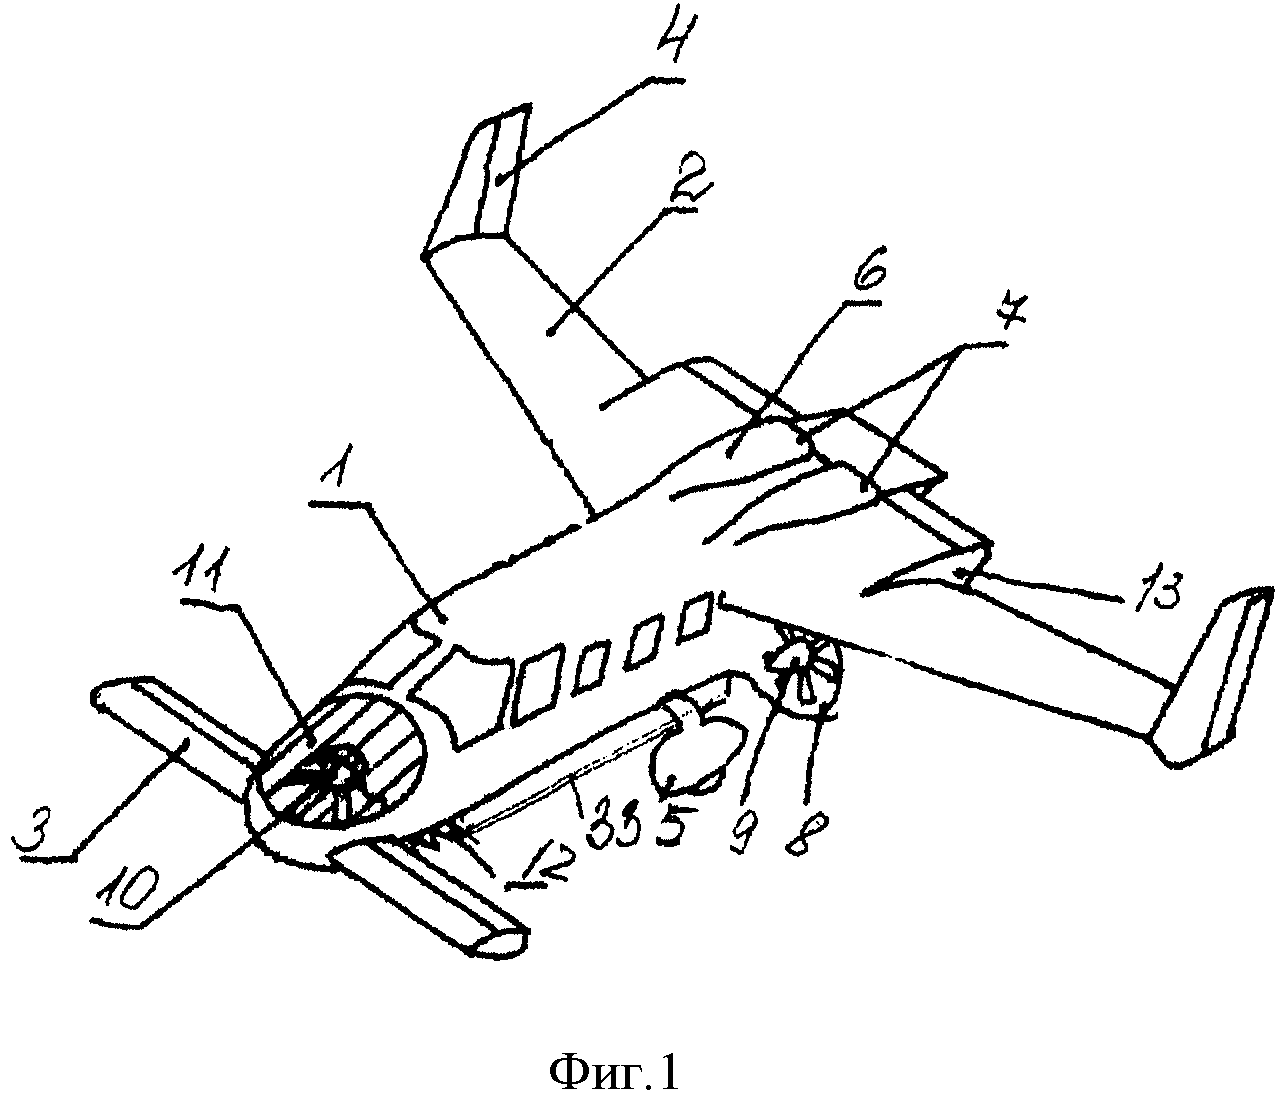 Самолет вертикального взлета и посадки, выполненный по схеме 